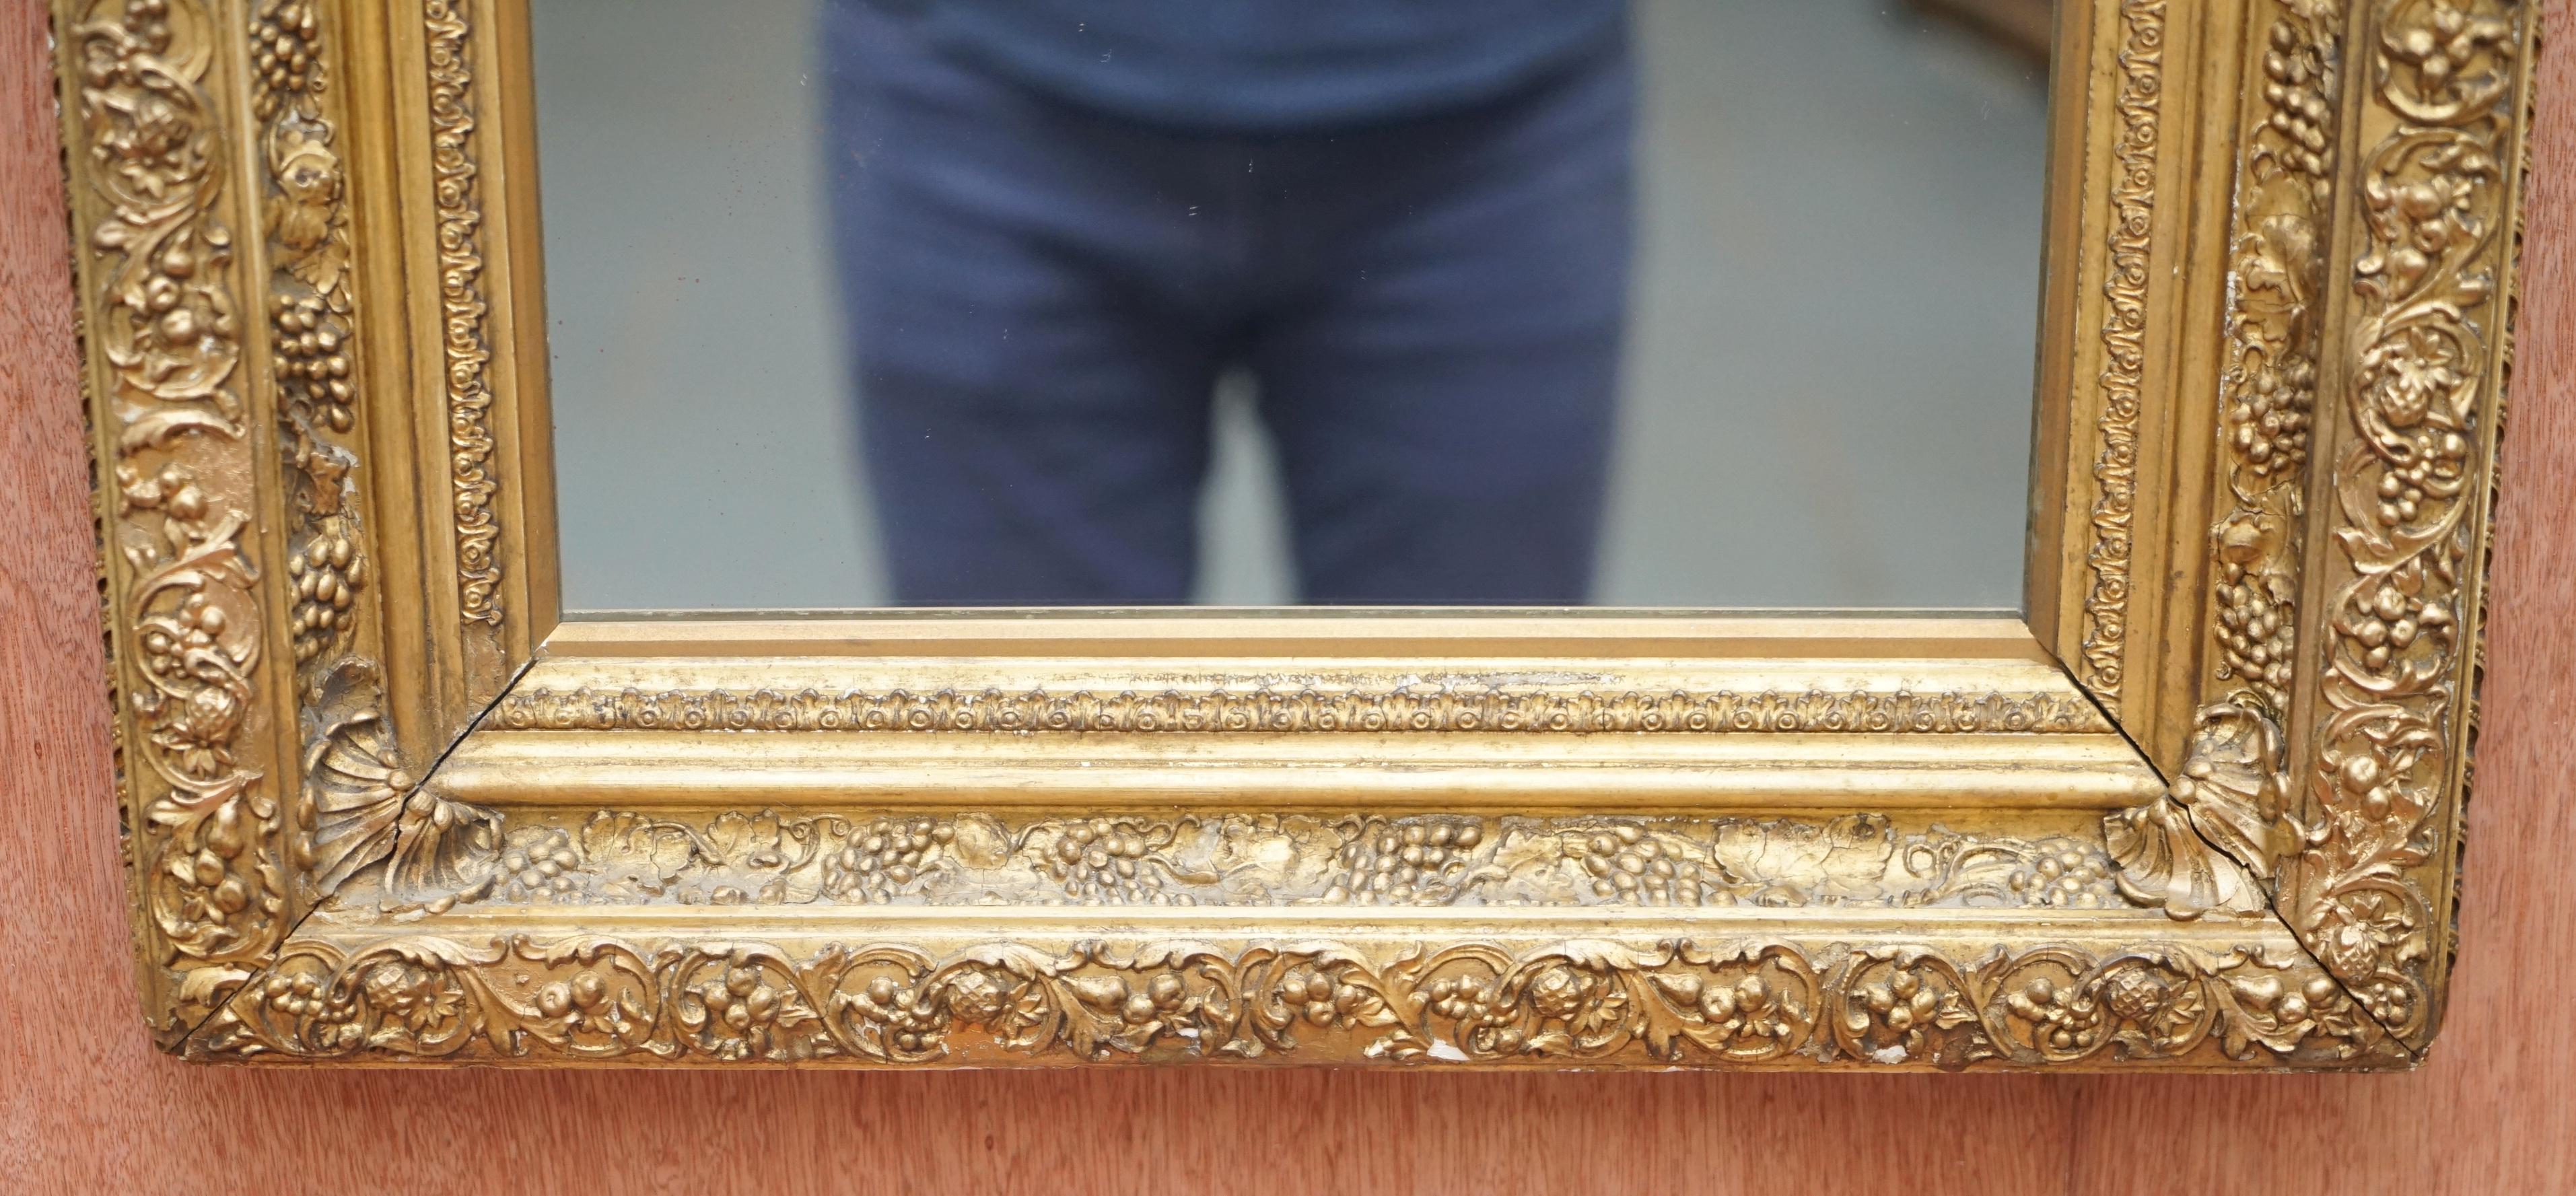 Nous sommes ravis d'offrir à la vente cet absolument sublime miroir mural anglais victorien fortement sculpté, vers 1880

Ce miroir est un tour de force de la sculpture, le cadre a trois niveaux qui ont à leur tour différents styles de sculpture